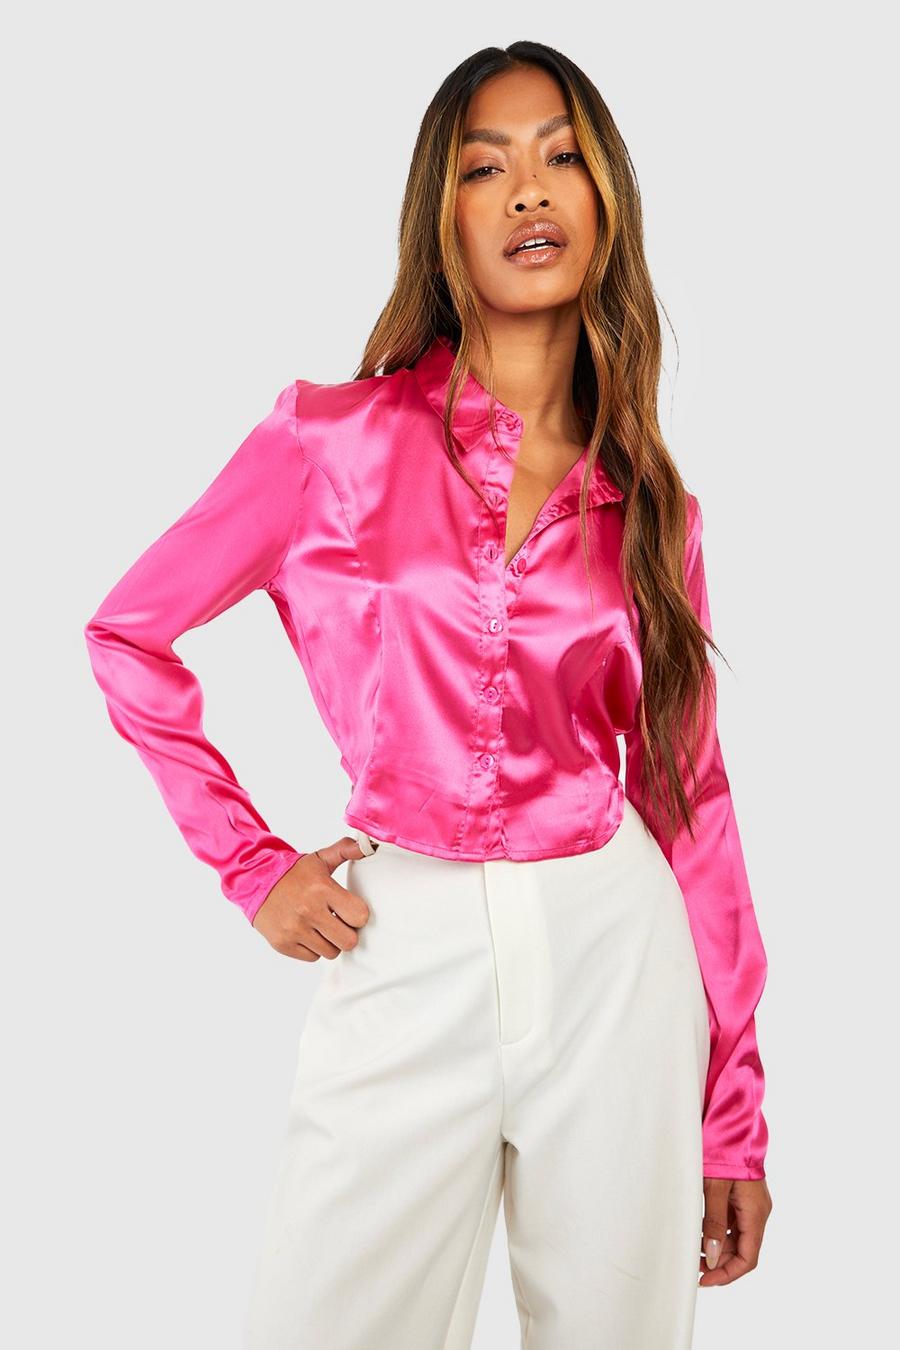 Bright pink Kort satinskjorta med dekorativa sömmar